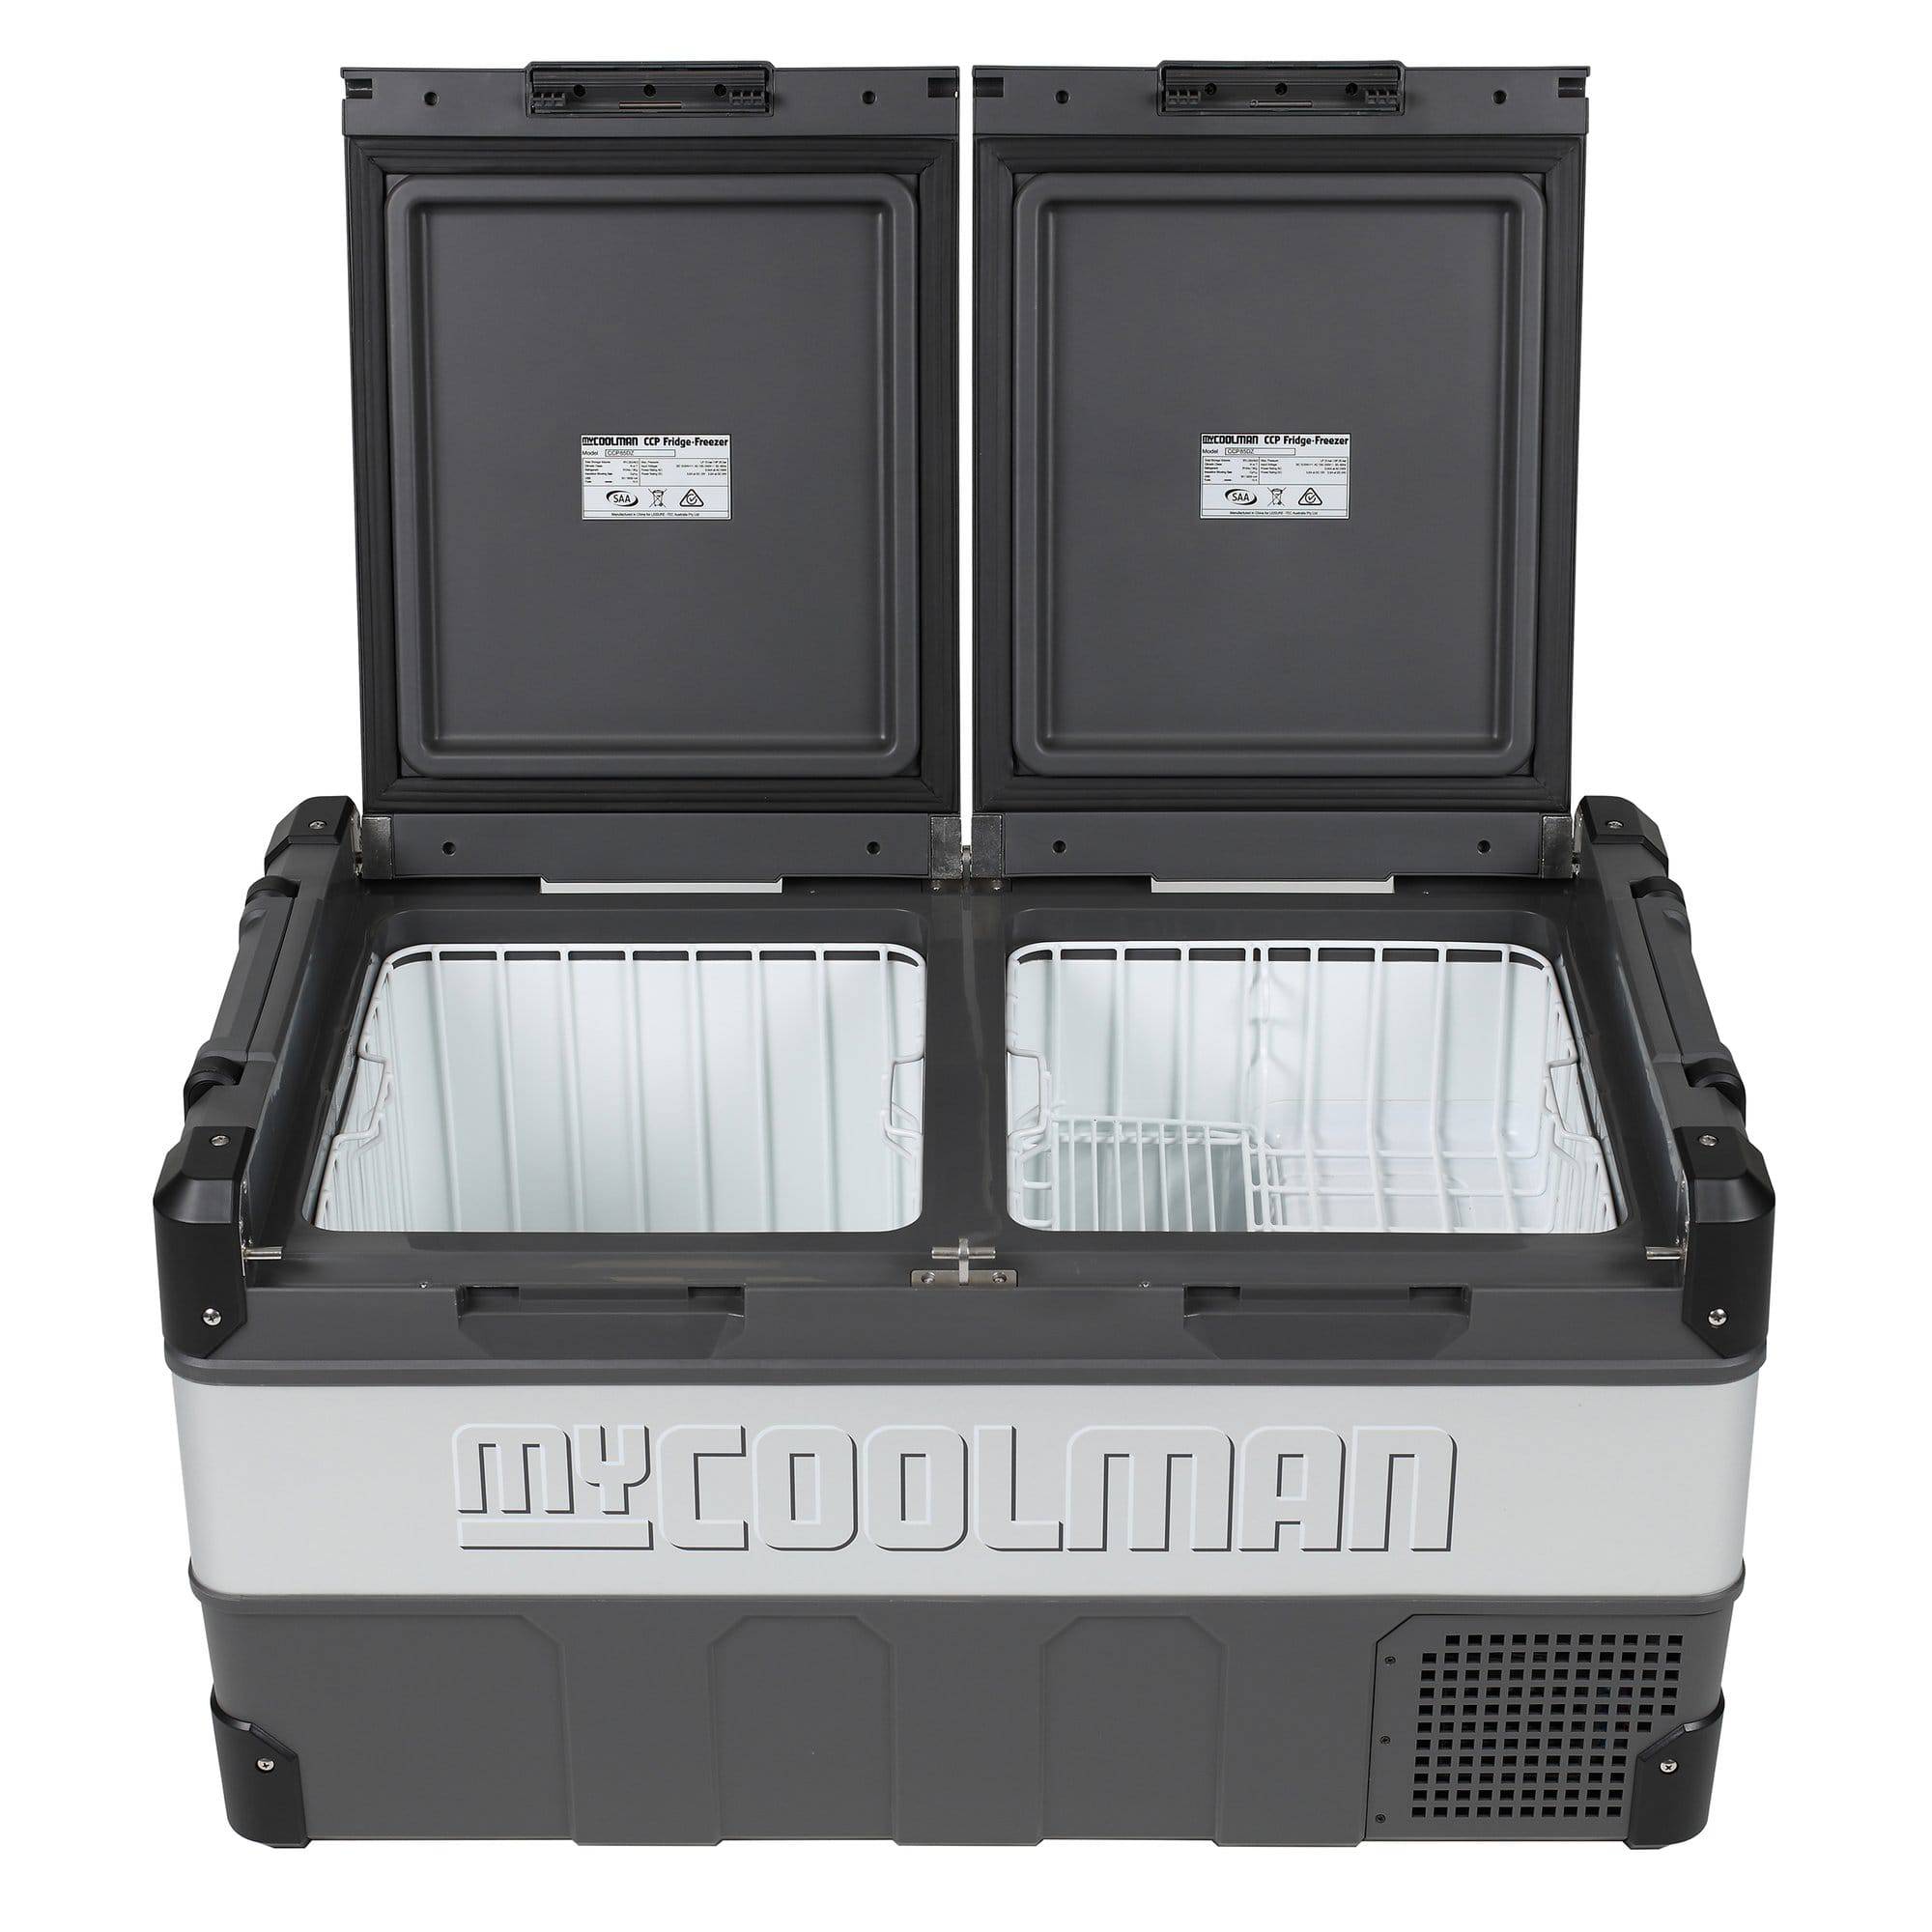 myCOOLMAN 85 Litre Dual Zone Portable AC/DC Fridge Freezer | myCOOLMAN